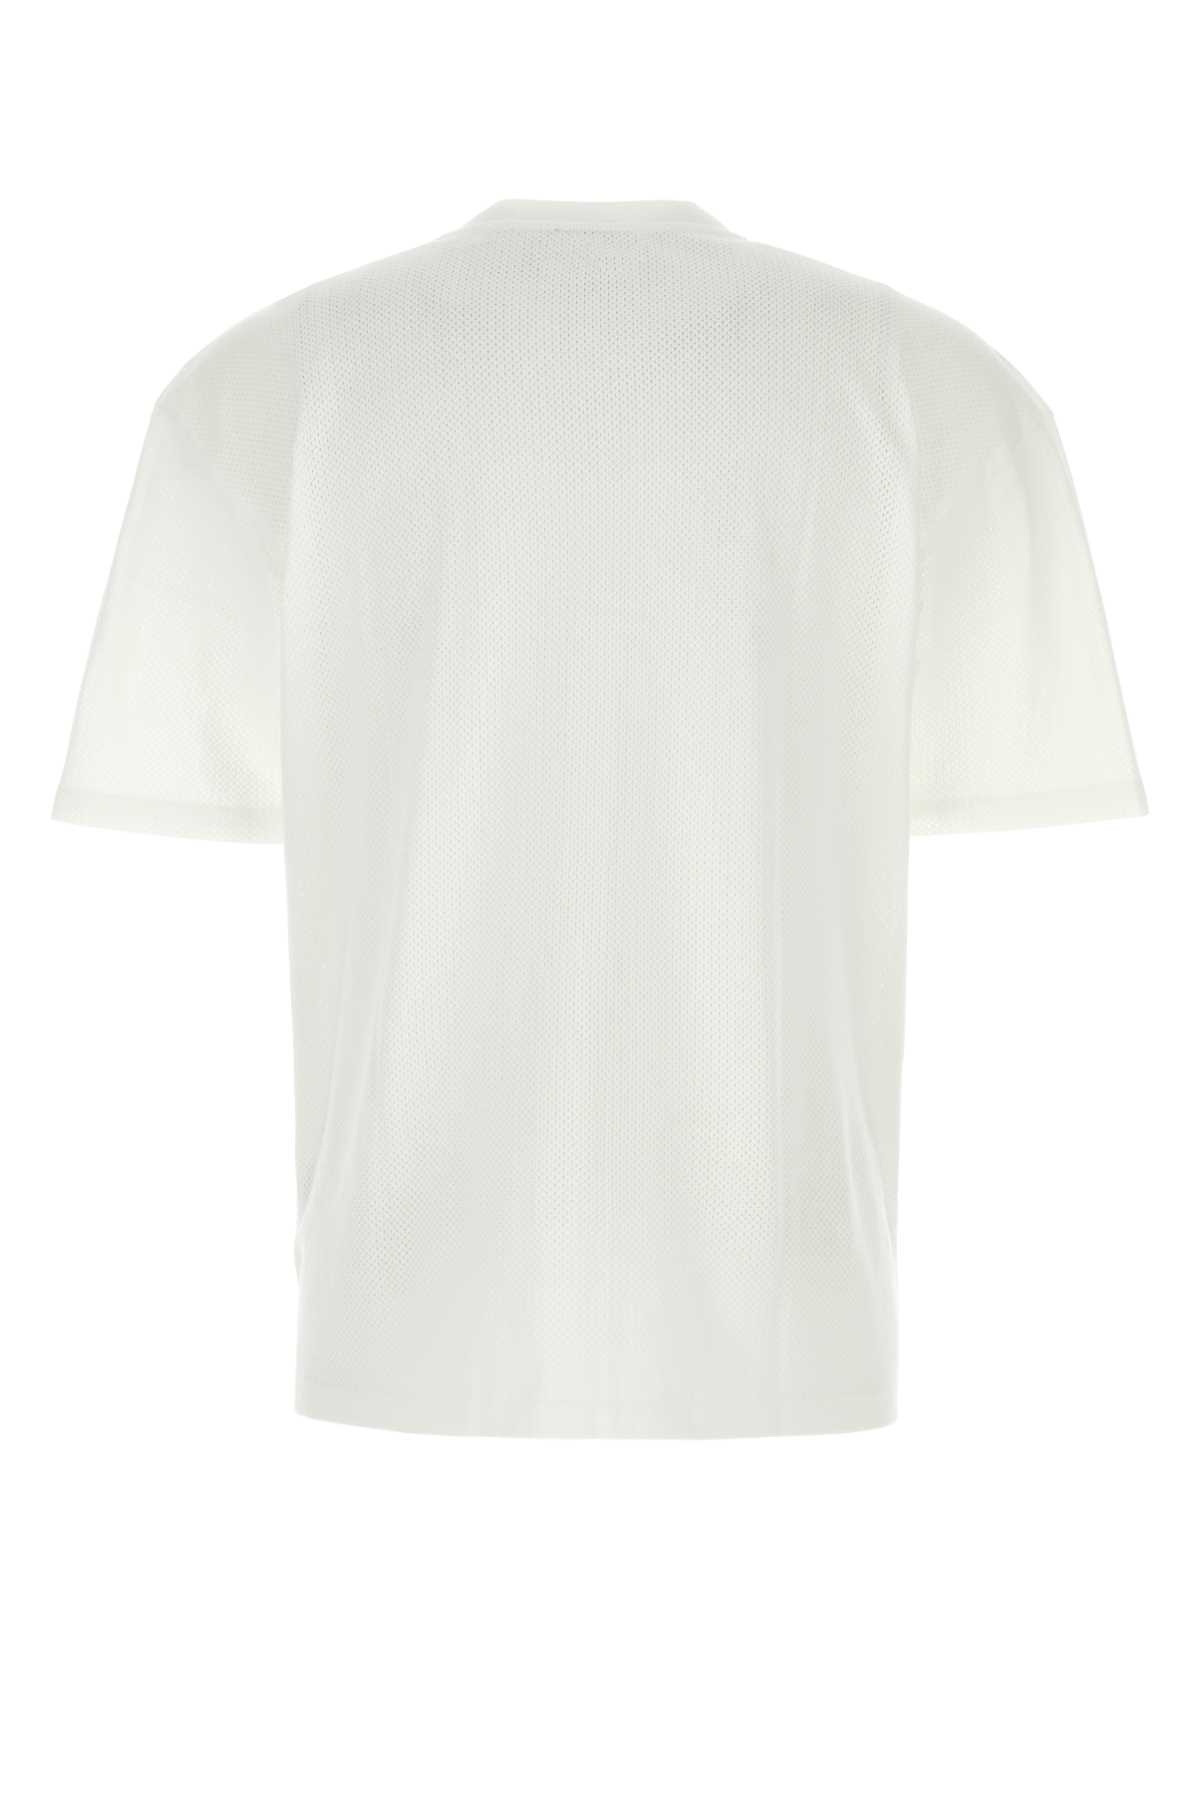 Shop Apc White Cotton Oversize T-shirt